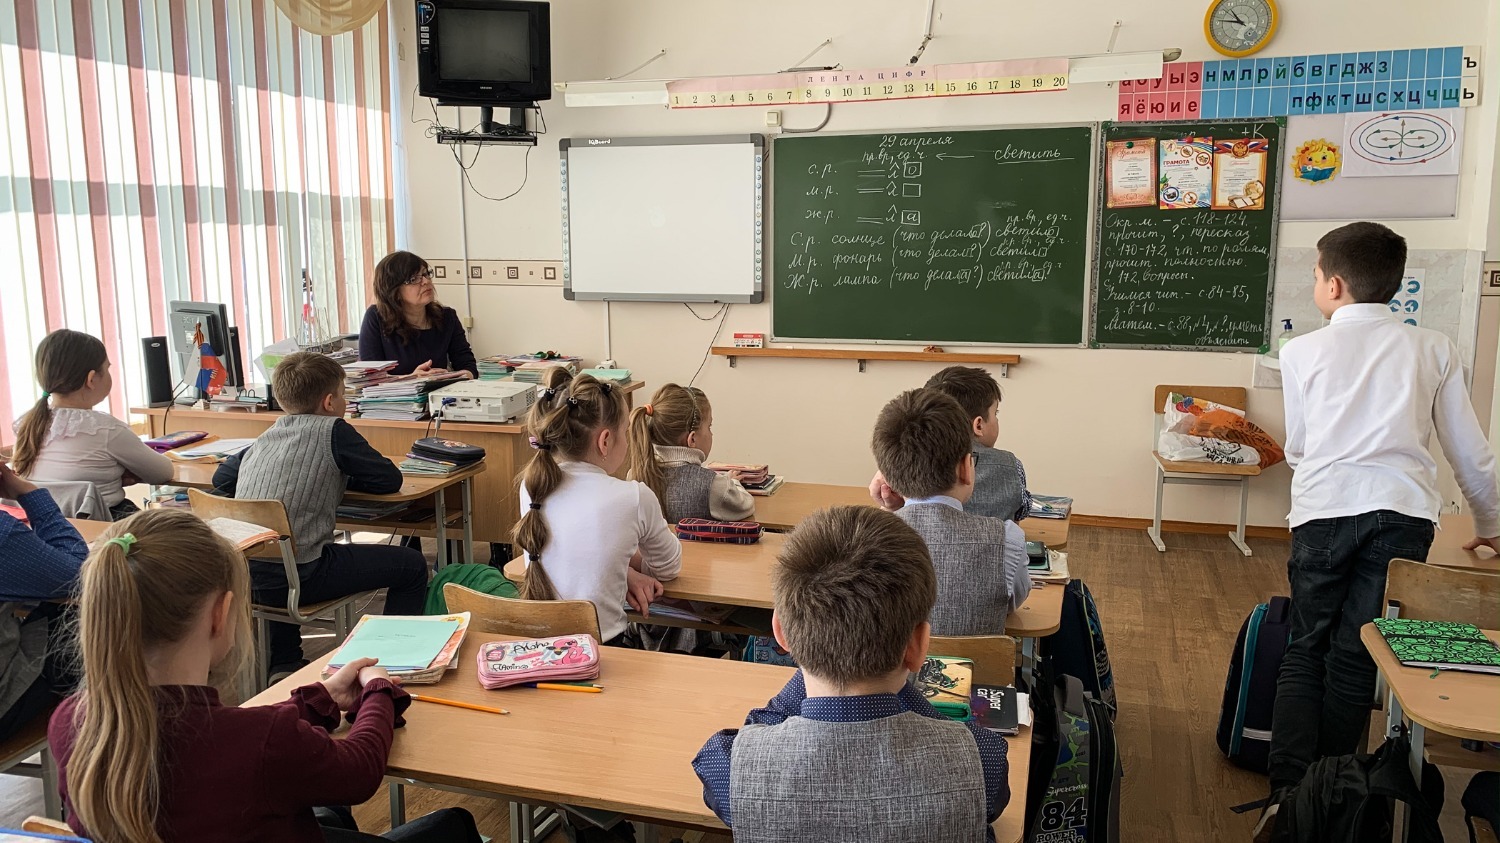 По словам собеседника, педагоги Ростовской области не относят себя к материально обеспеченным слоям населения. 